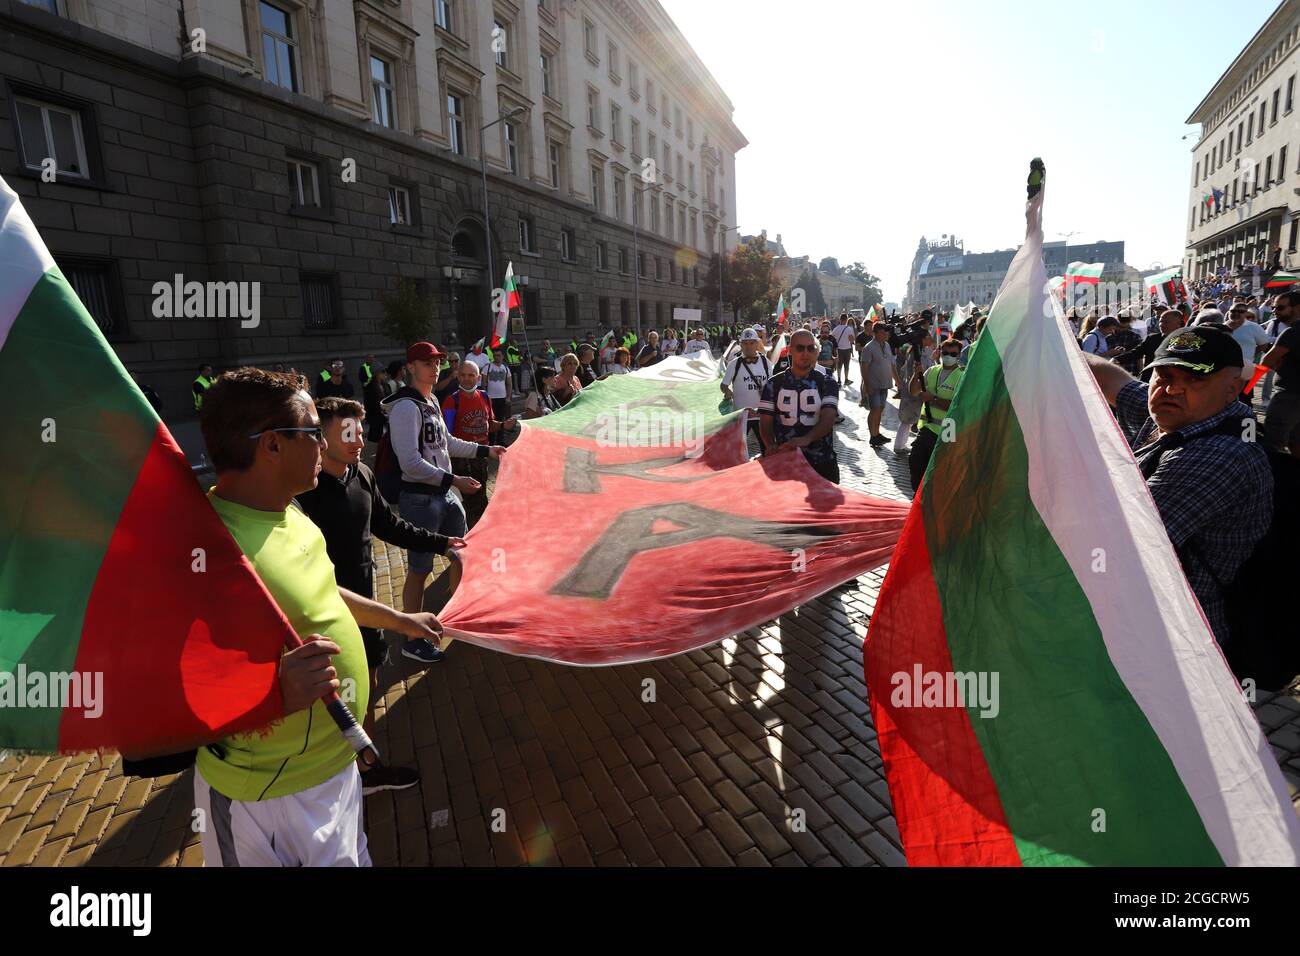 10 de septiembre, Sofía, Bulgaria: 64º día de protestas contra la mafia, el gobierno y el fiscal general Ivan Geshev. La gente desenrolla la fl búlgara Foto de stock